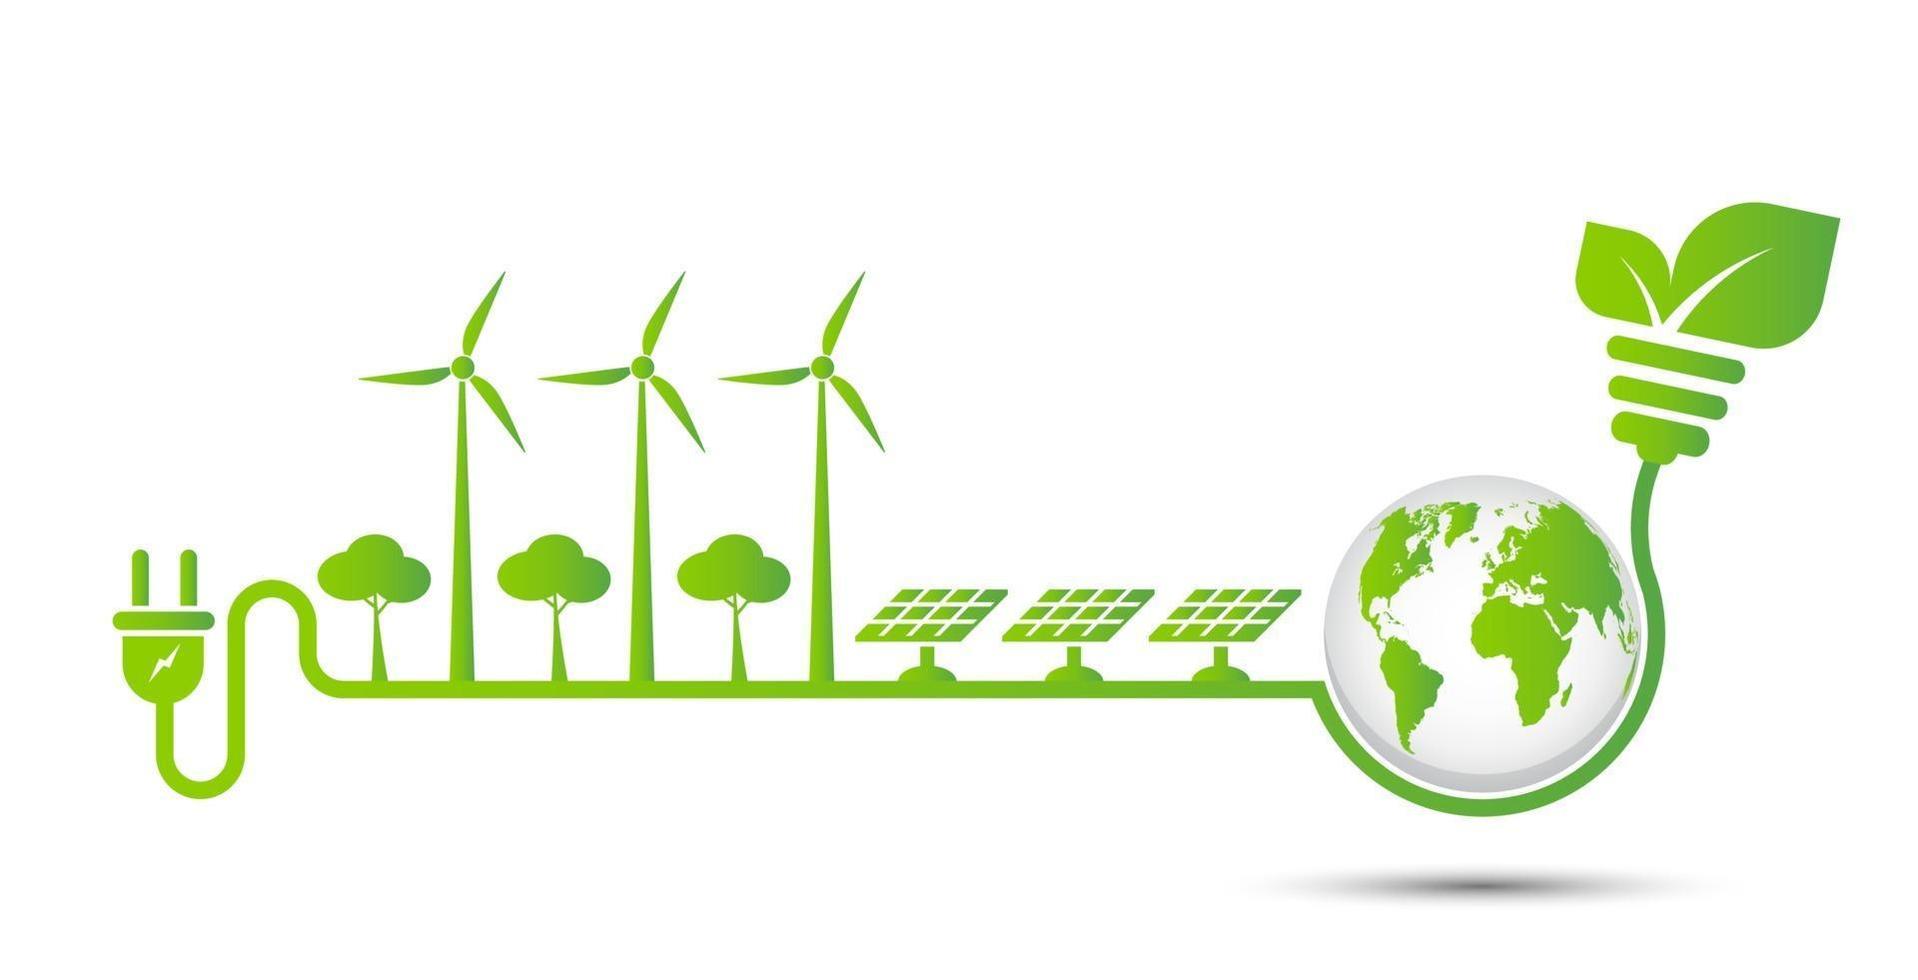 idées de technologies d'énergie verte pour l'environnement vecteur